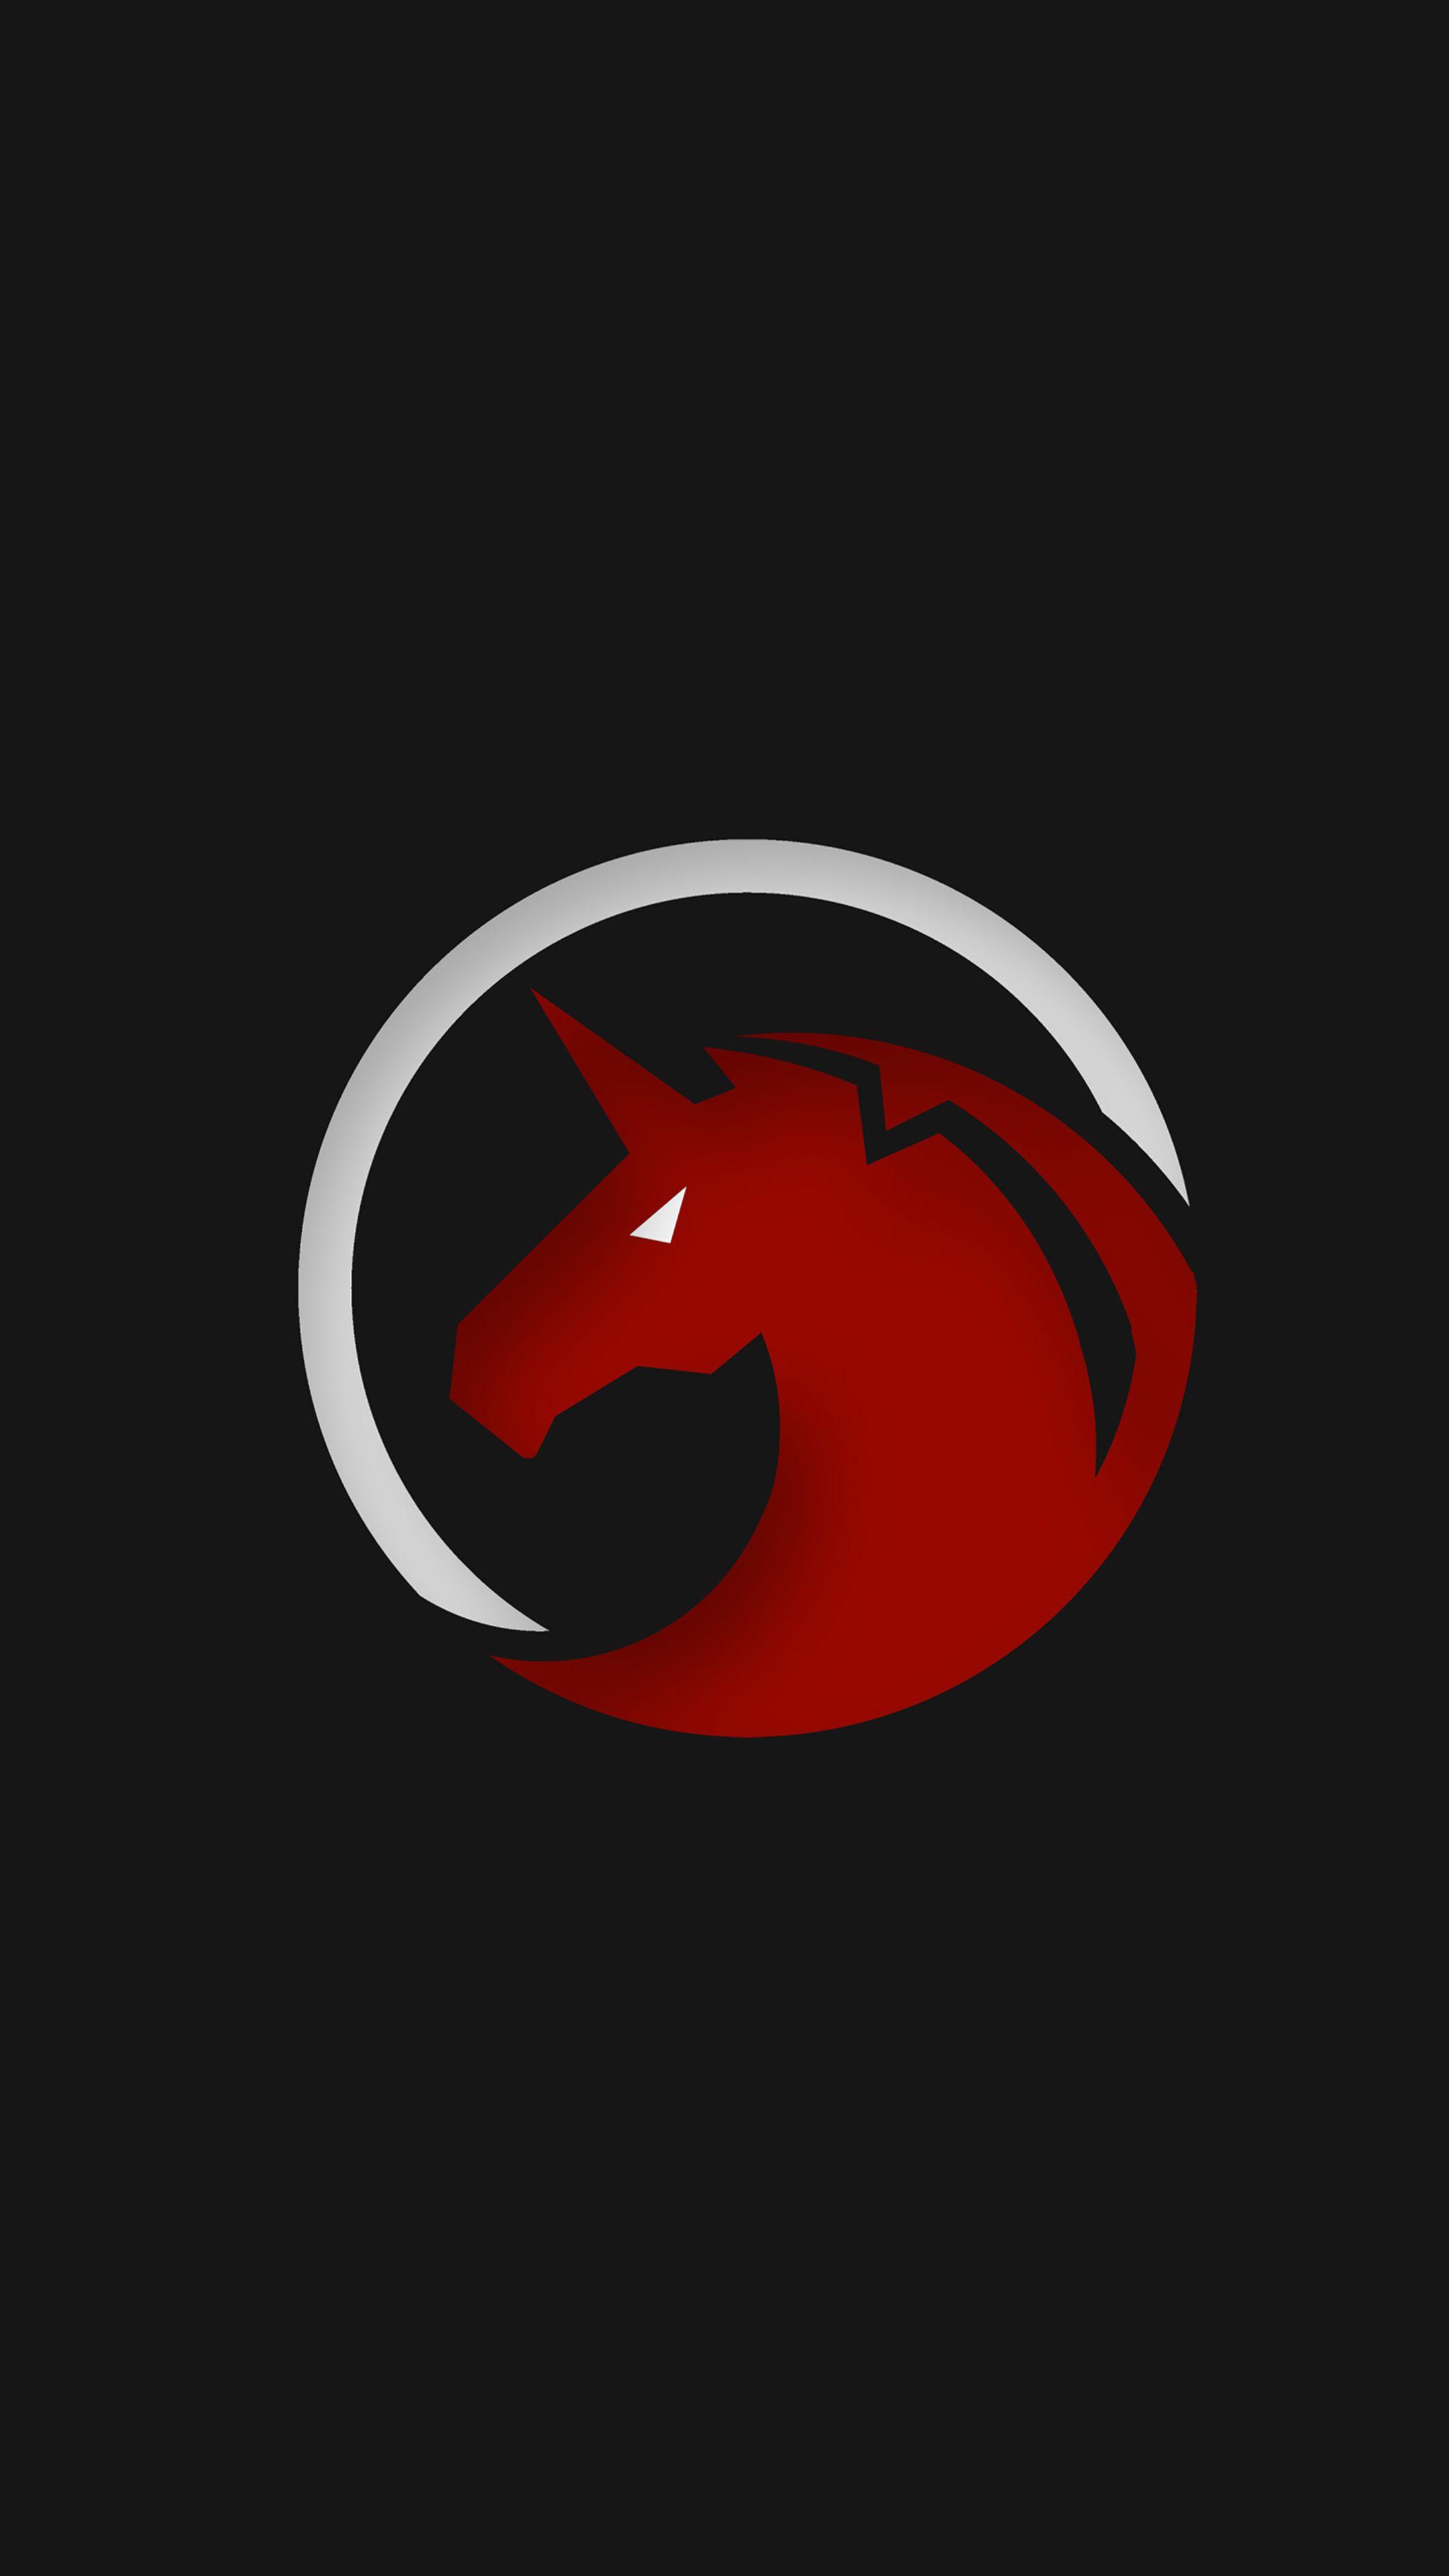 Red Unicorn Logo - 2160x3840 Red Unicorn Logo 4k Sony Xperia X,XZ,Z5 Premium HD 4k ...